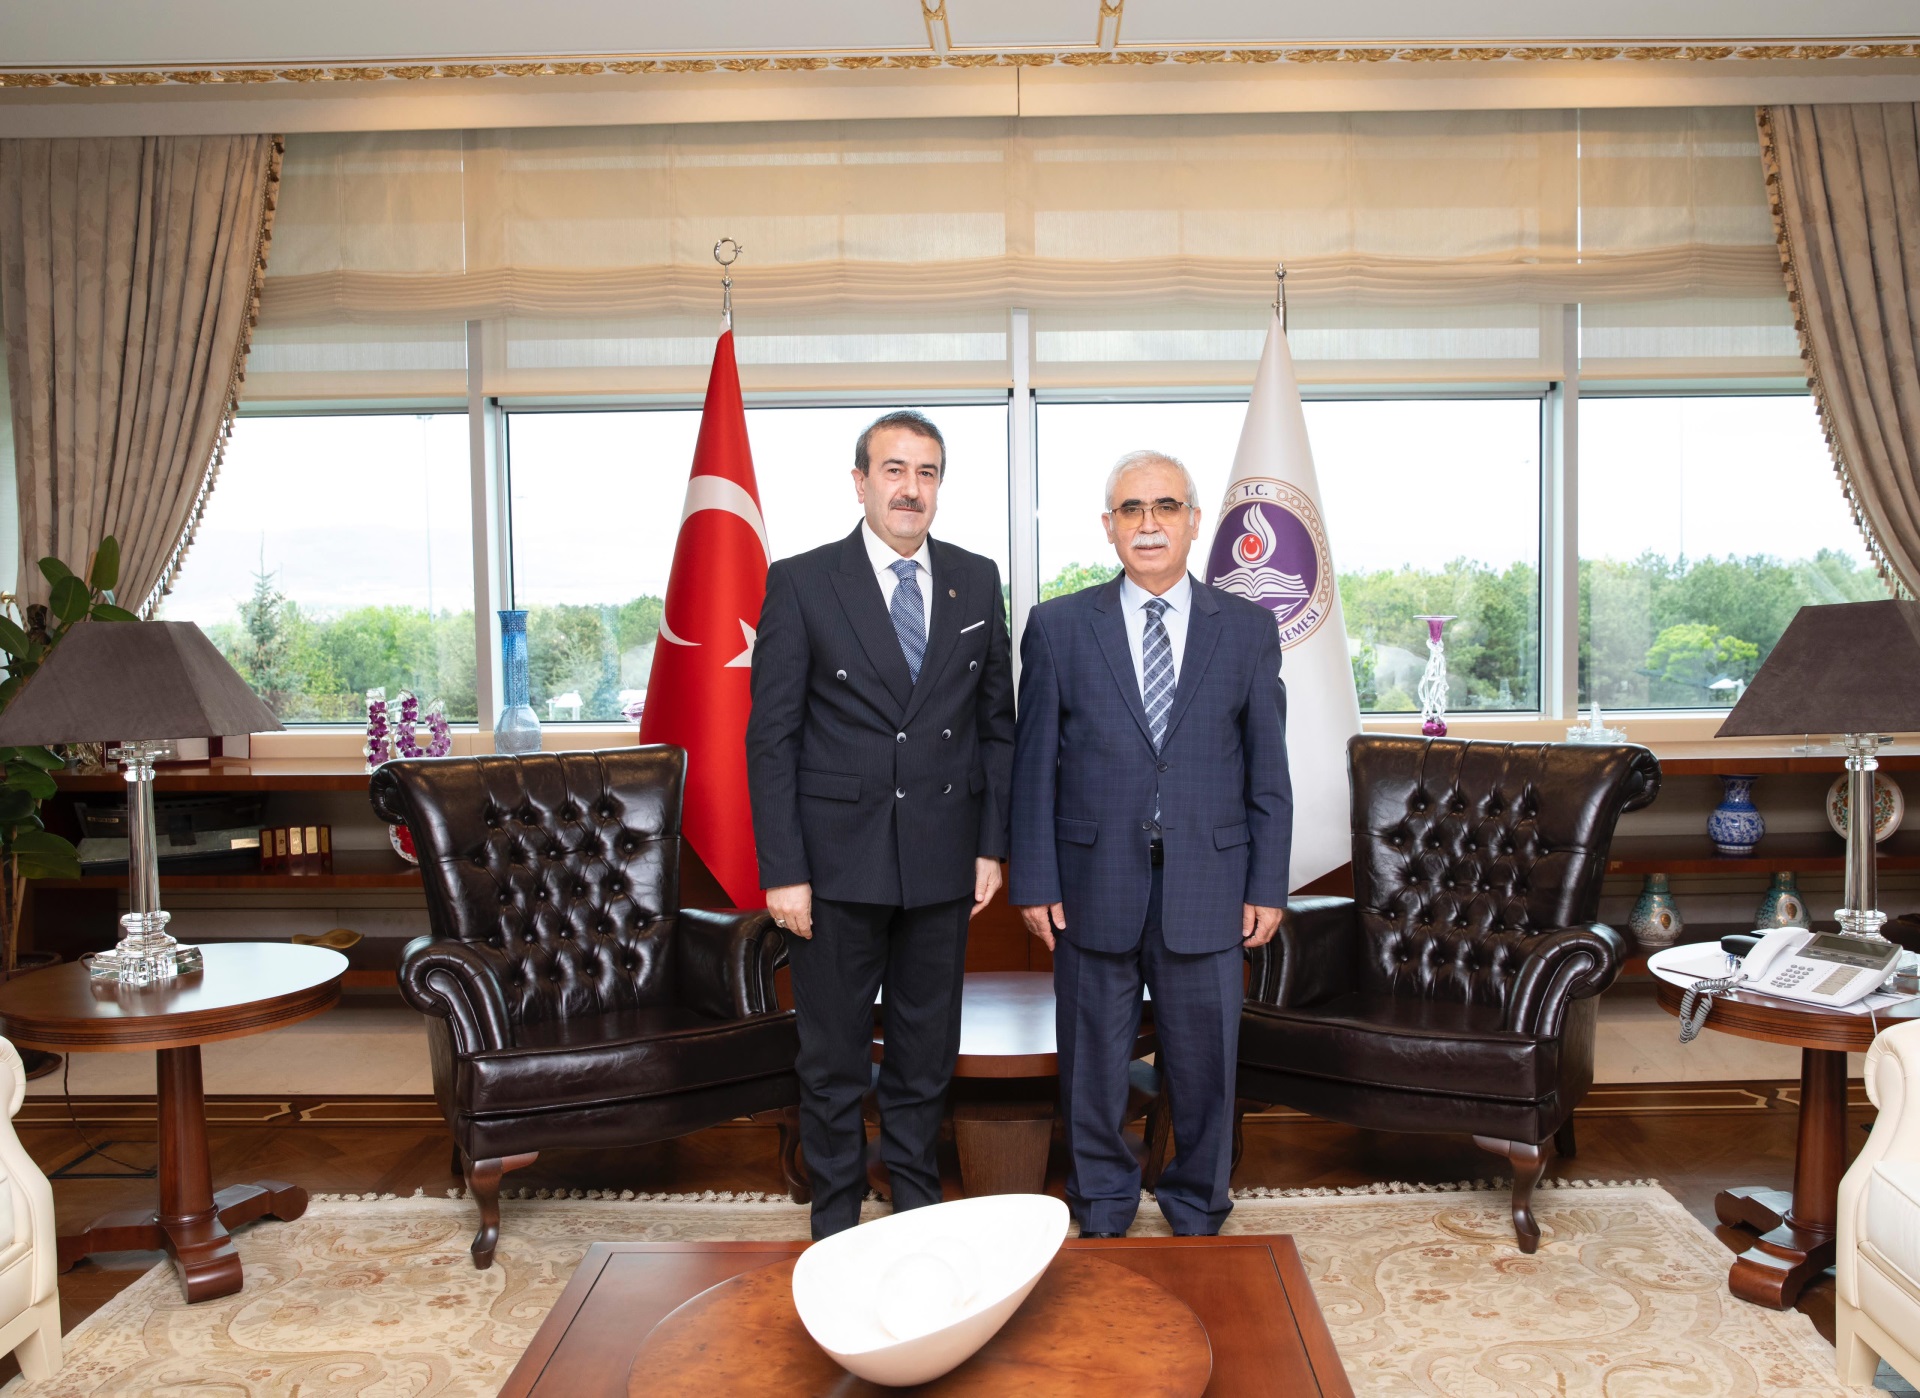 Ankara Bölge İdare Mahkemesi Başkanı Sayın Bülent KÜFÜDÜR,  Anayasa Mahkemesi Başkanı Sayın Kadir ÖZKAYA'ya hayırlı olsun ziyaretinde bulundu. 